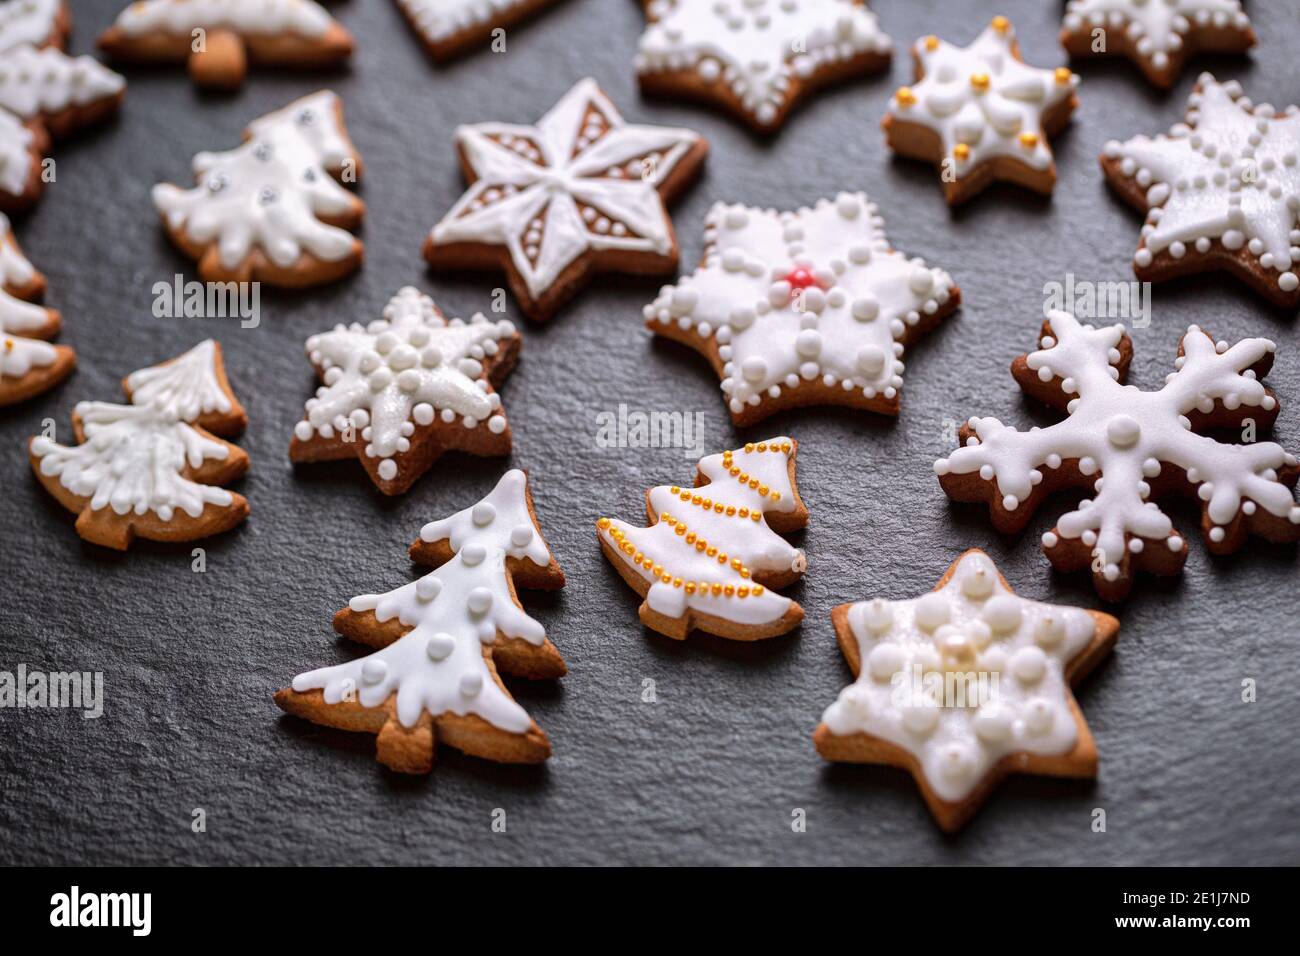 Homemade christmas cookies on slate table Stock Photo